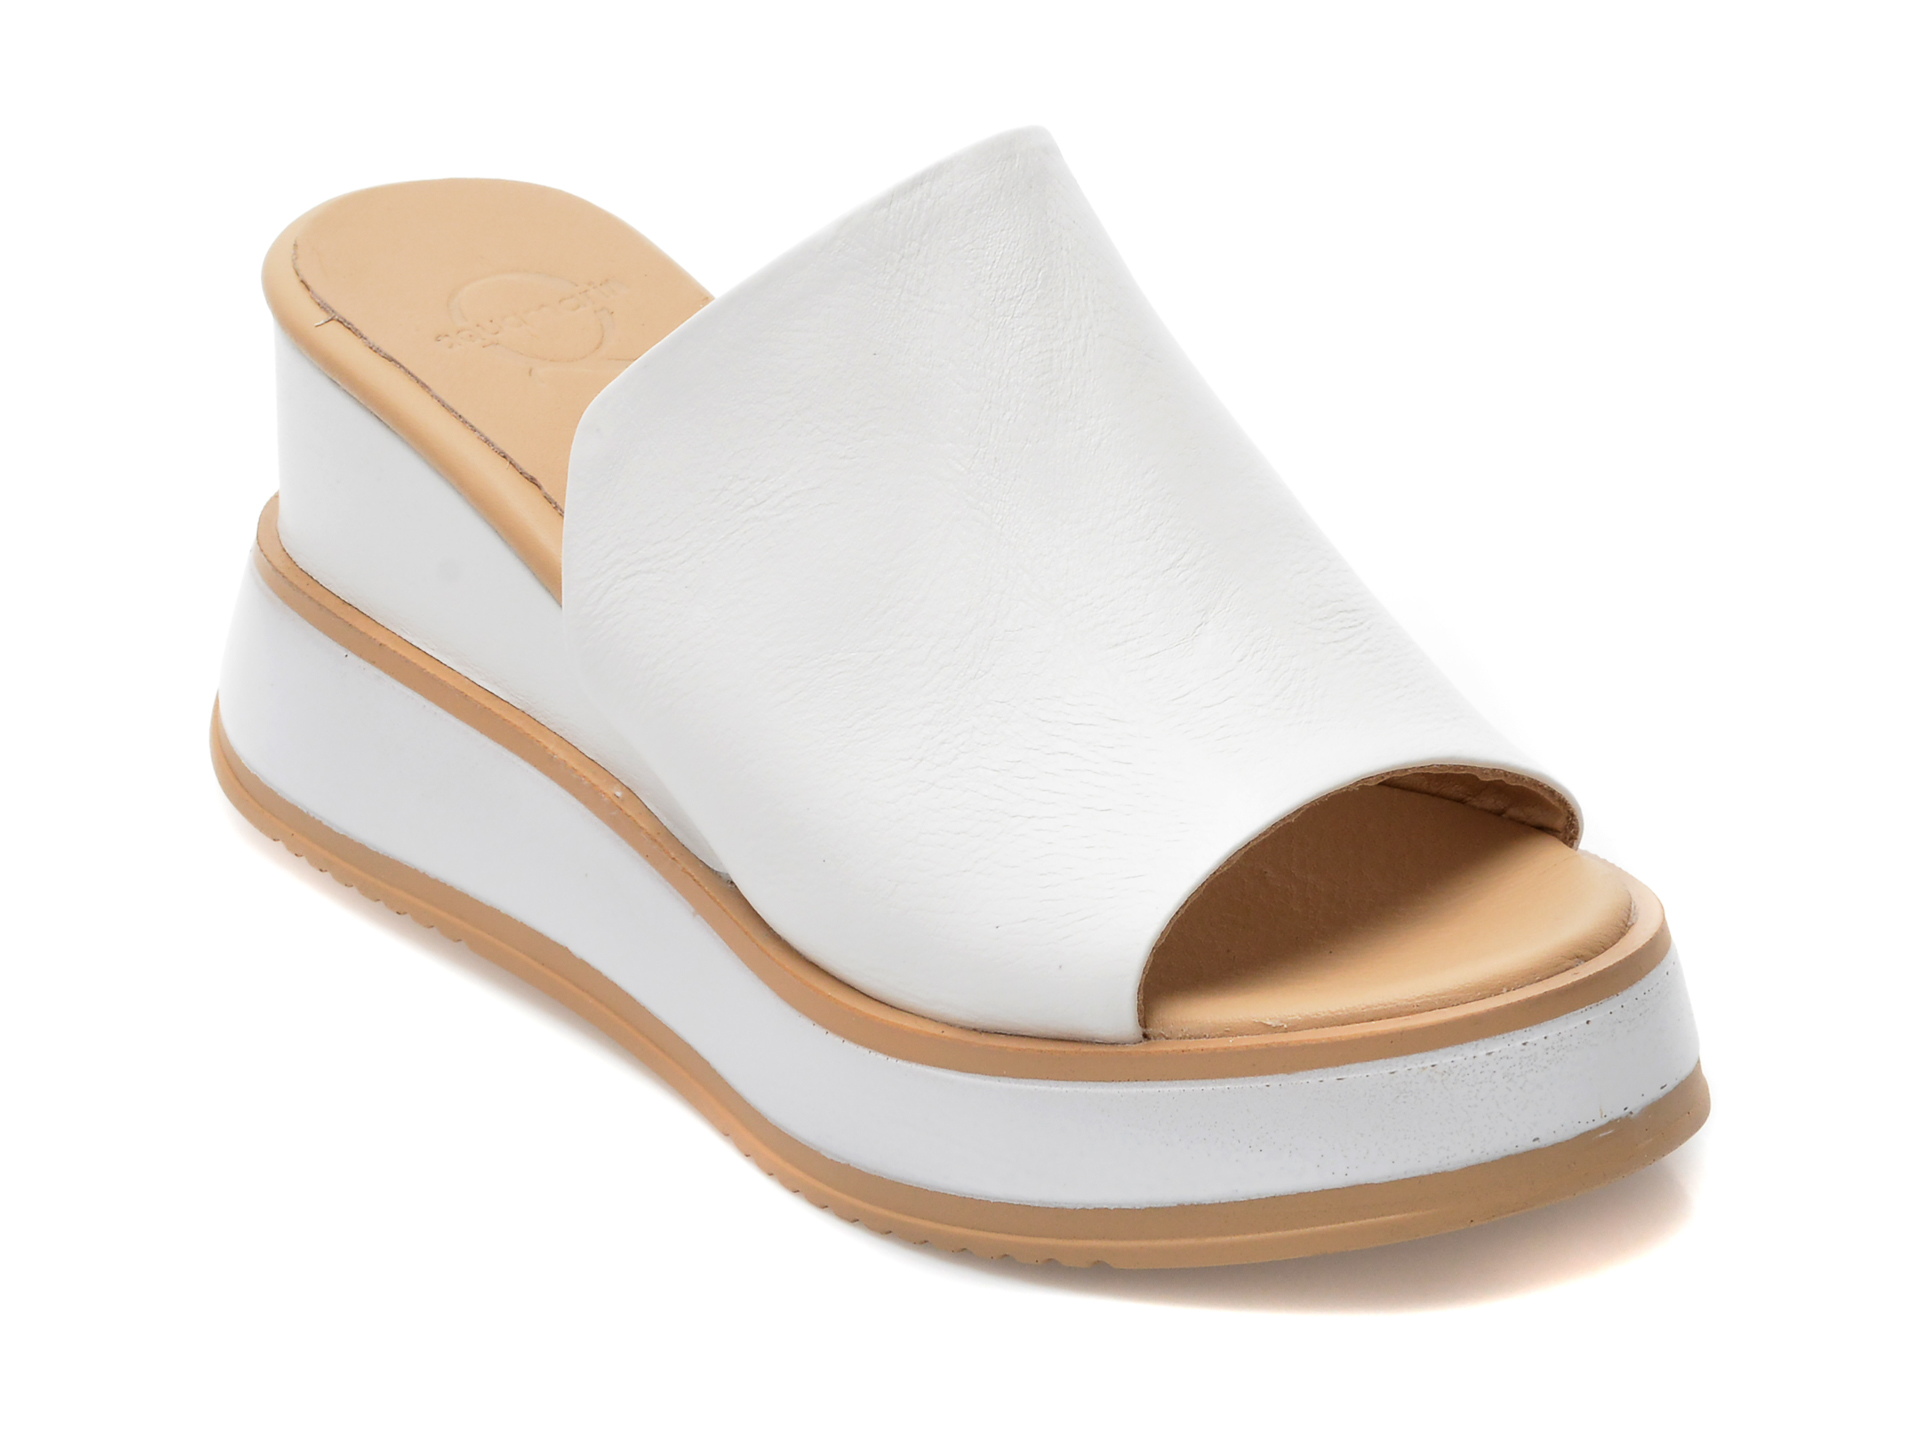 Papuci AQUAMARINE albi, 3012, din piele naturala